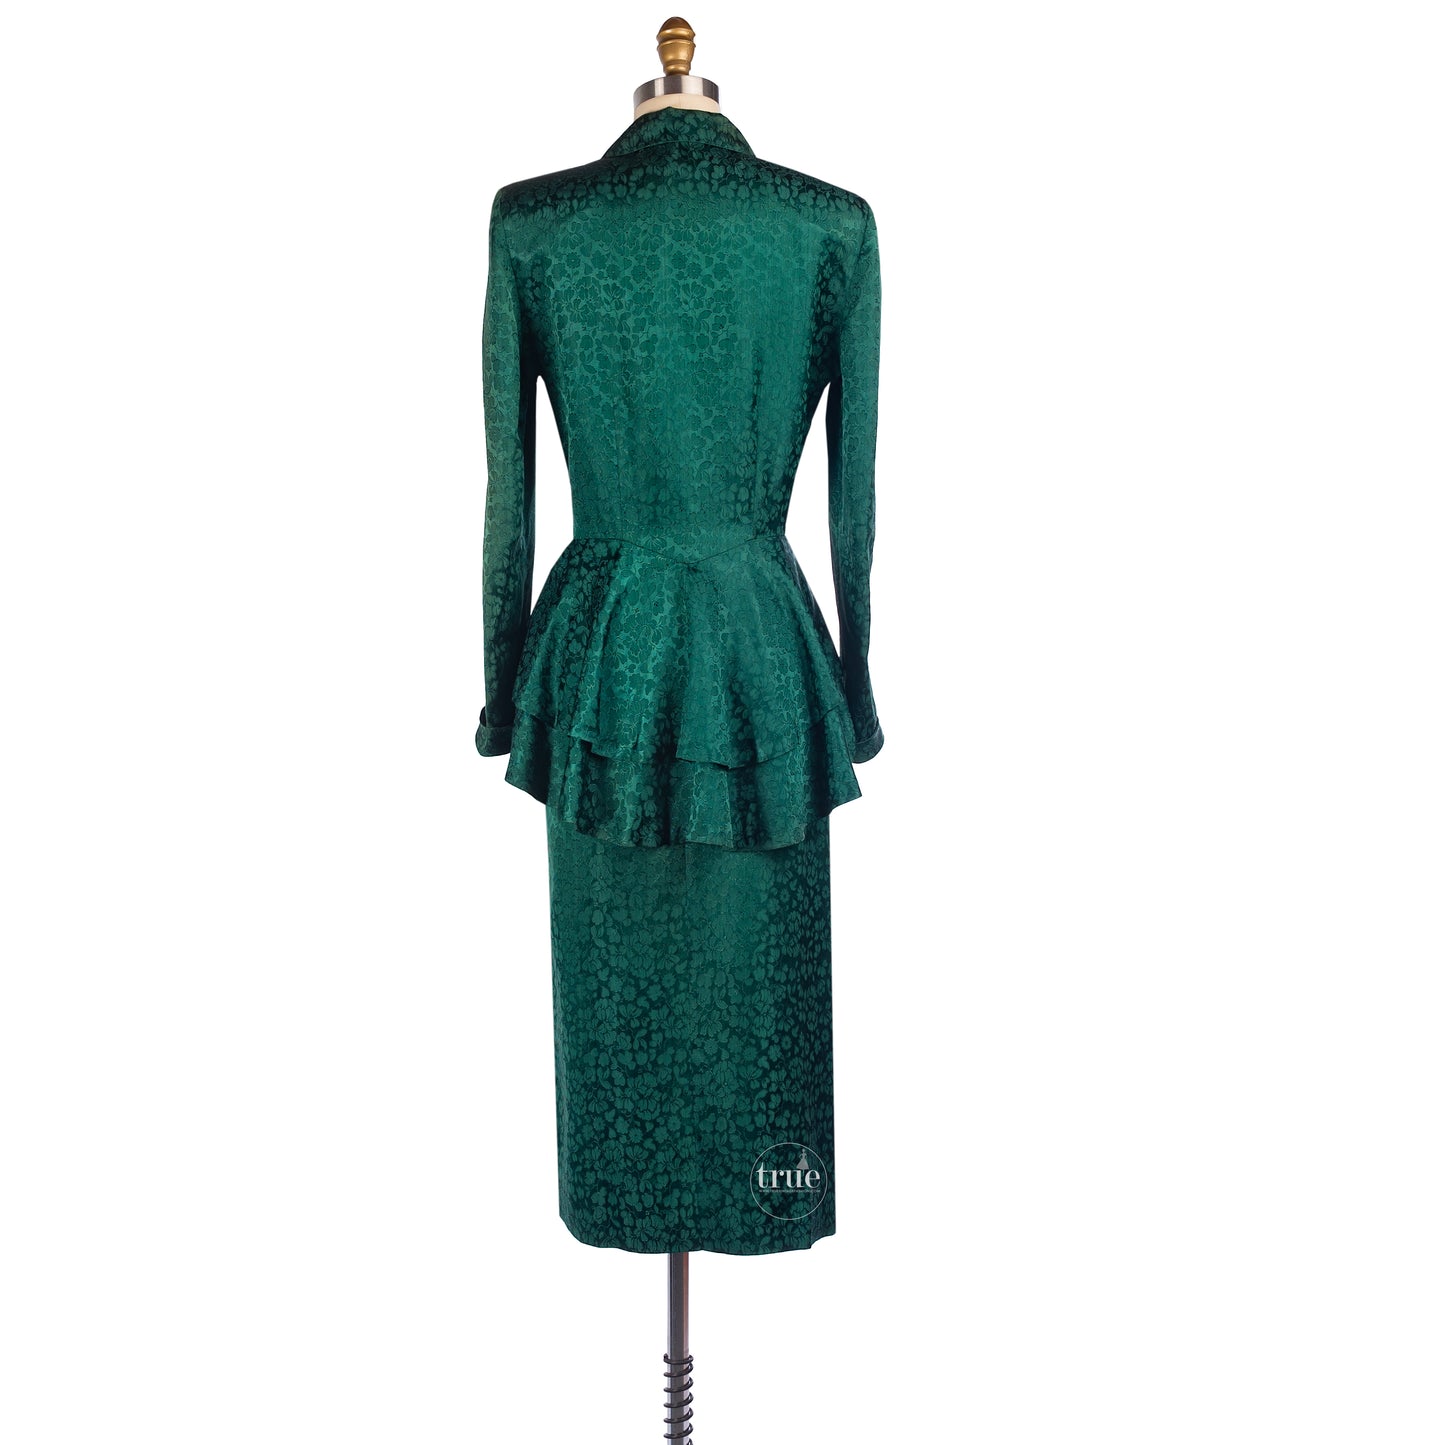 1940’s Suzy Perette emerald brocade suit